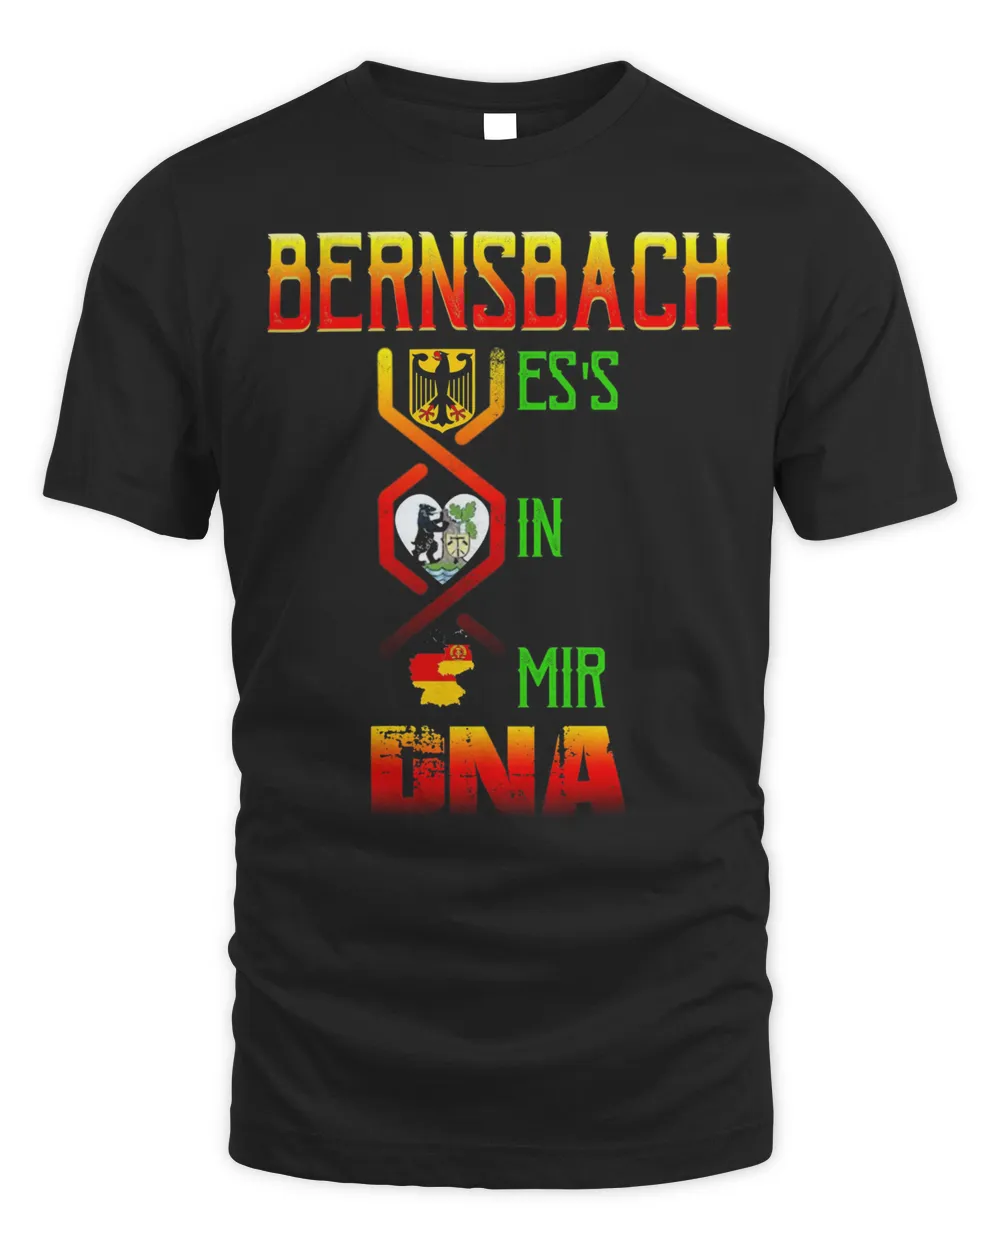 Bernsbach Es's In Mir Dna Shirt